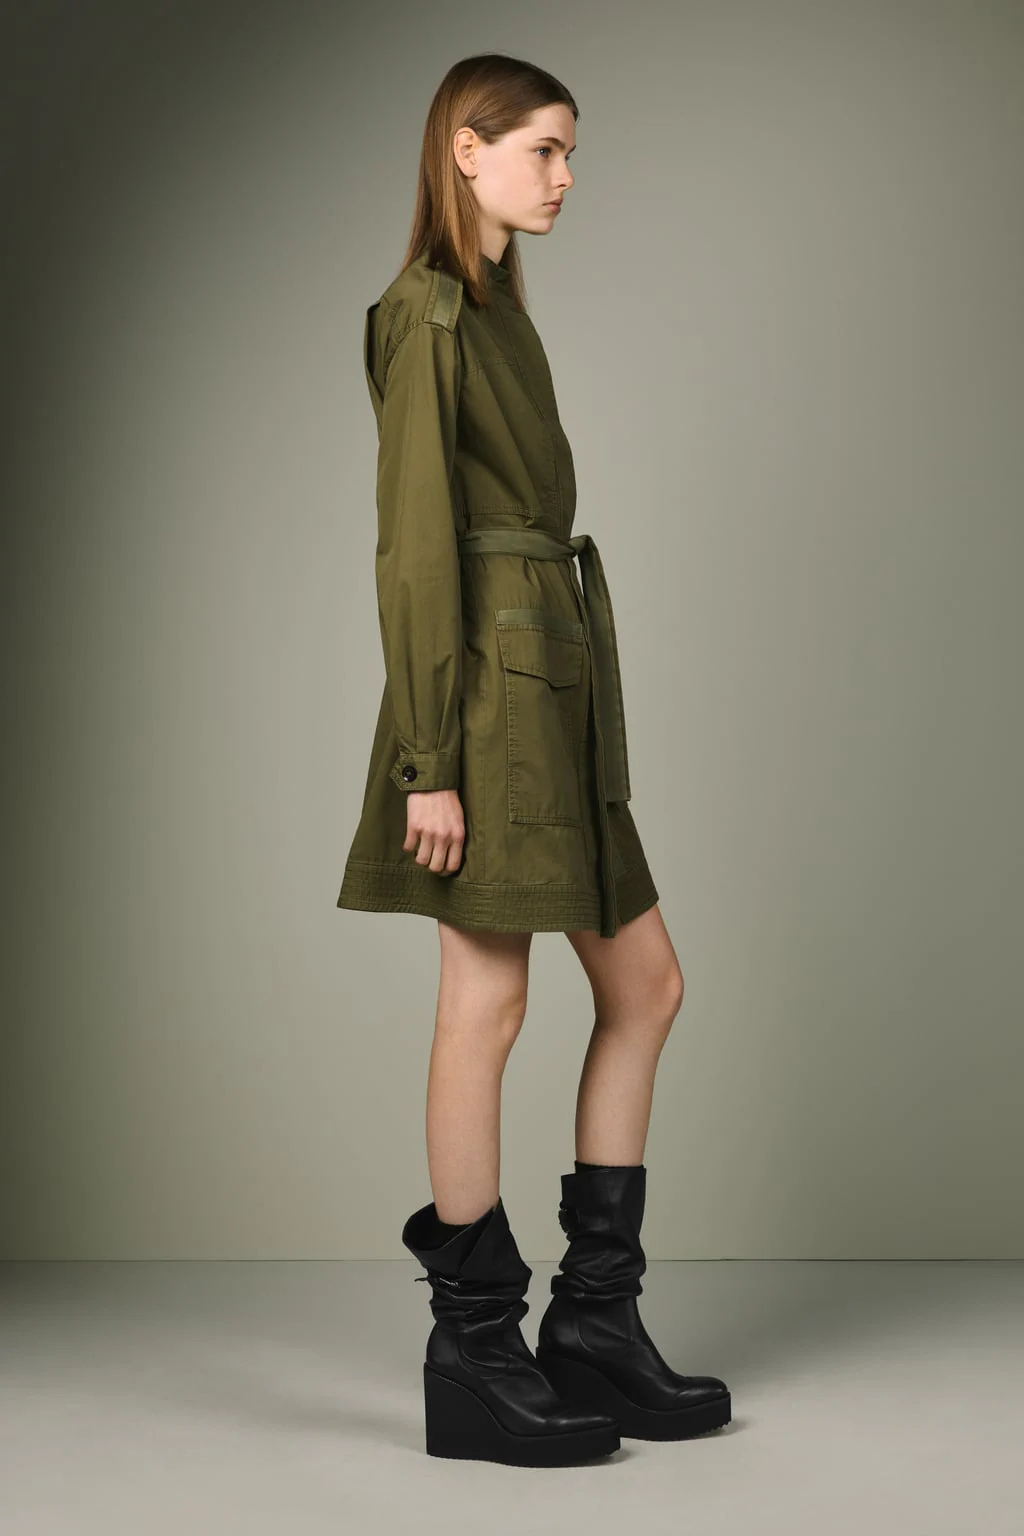 Zara lanza la tercera colección SRPLS, una línea de estética militar cuyos diseños se han vuelto imprescindibles en los looks de Marta Ortega